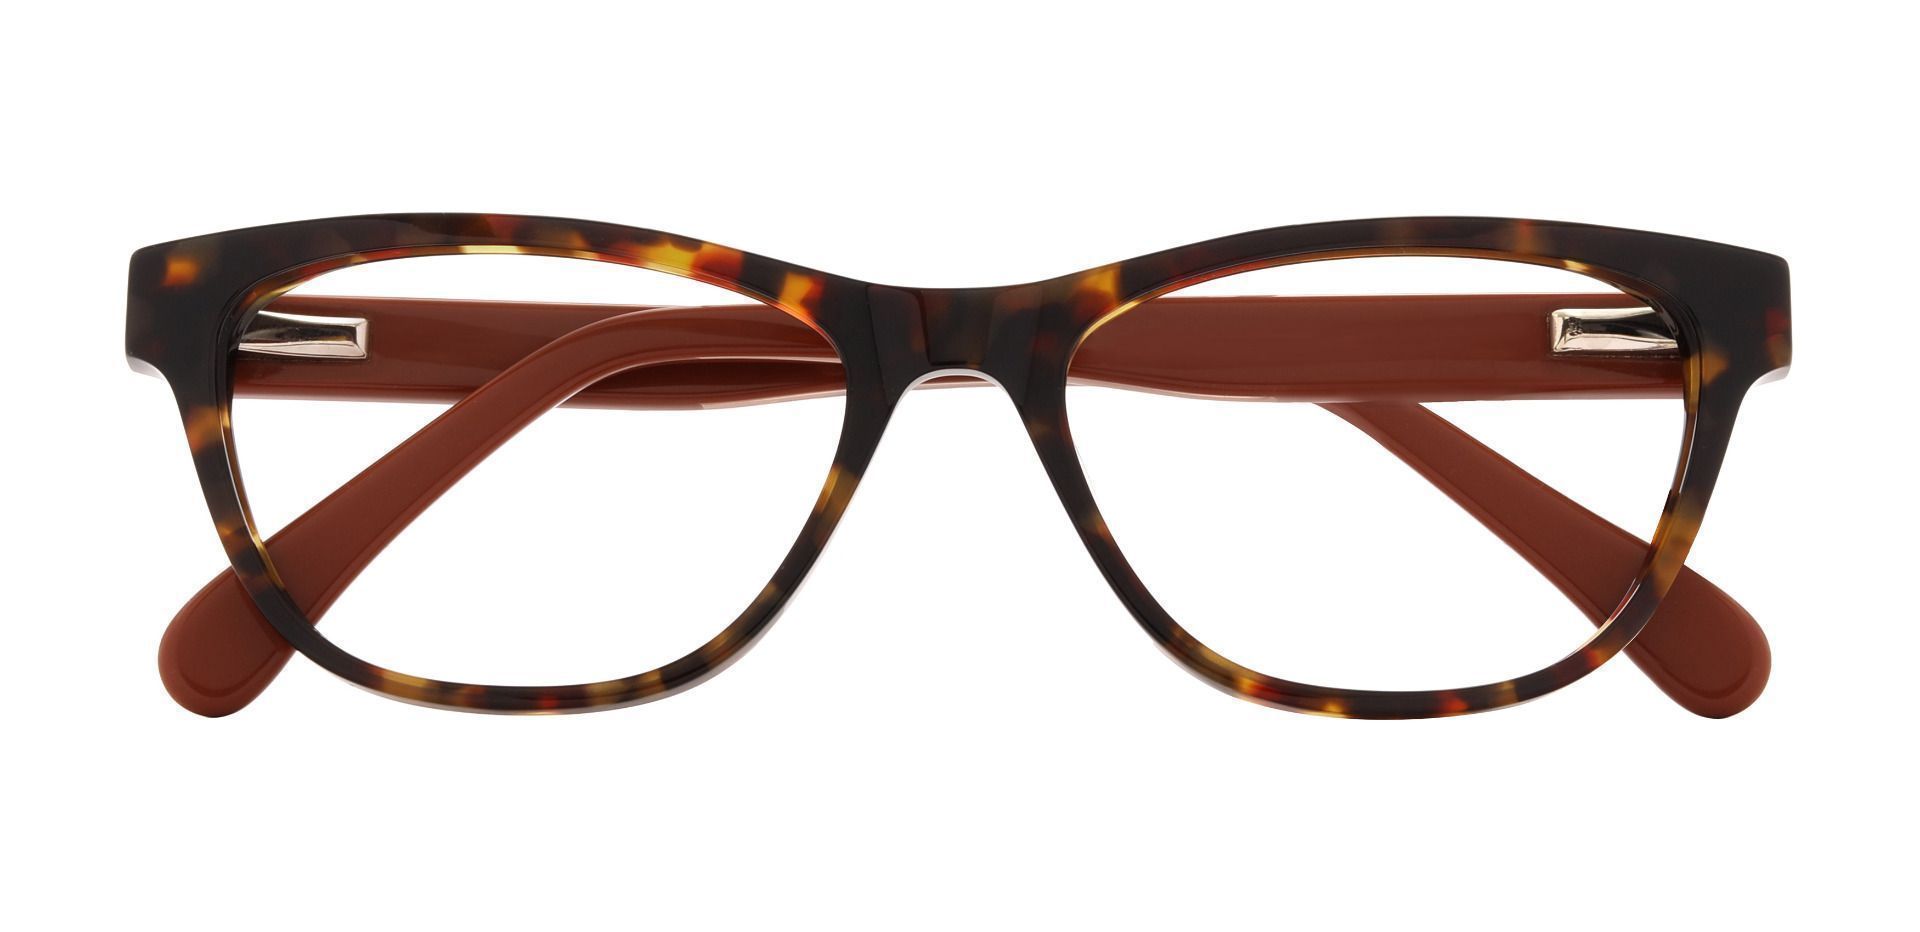 Bayside Cat Eye Prescription Glasses - Tortoise